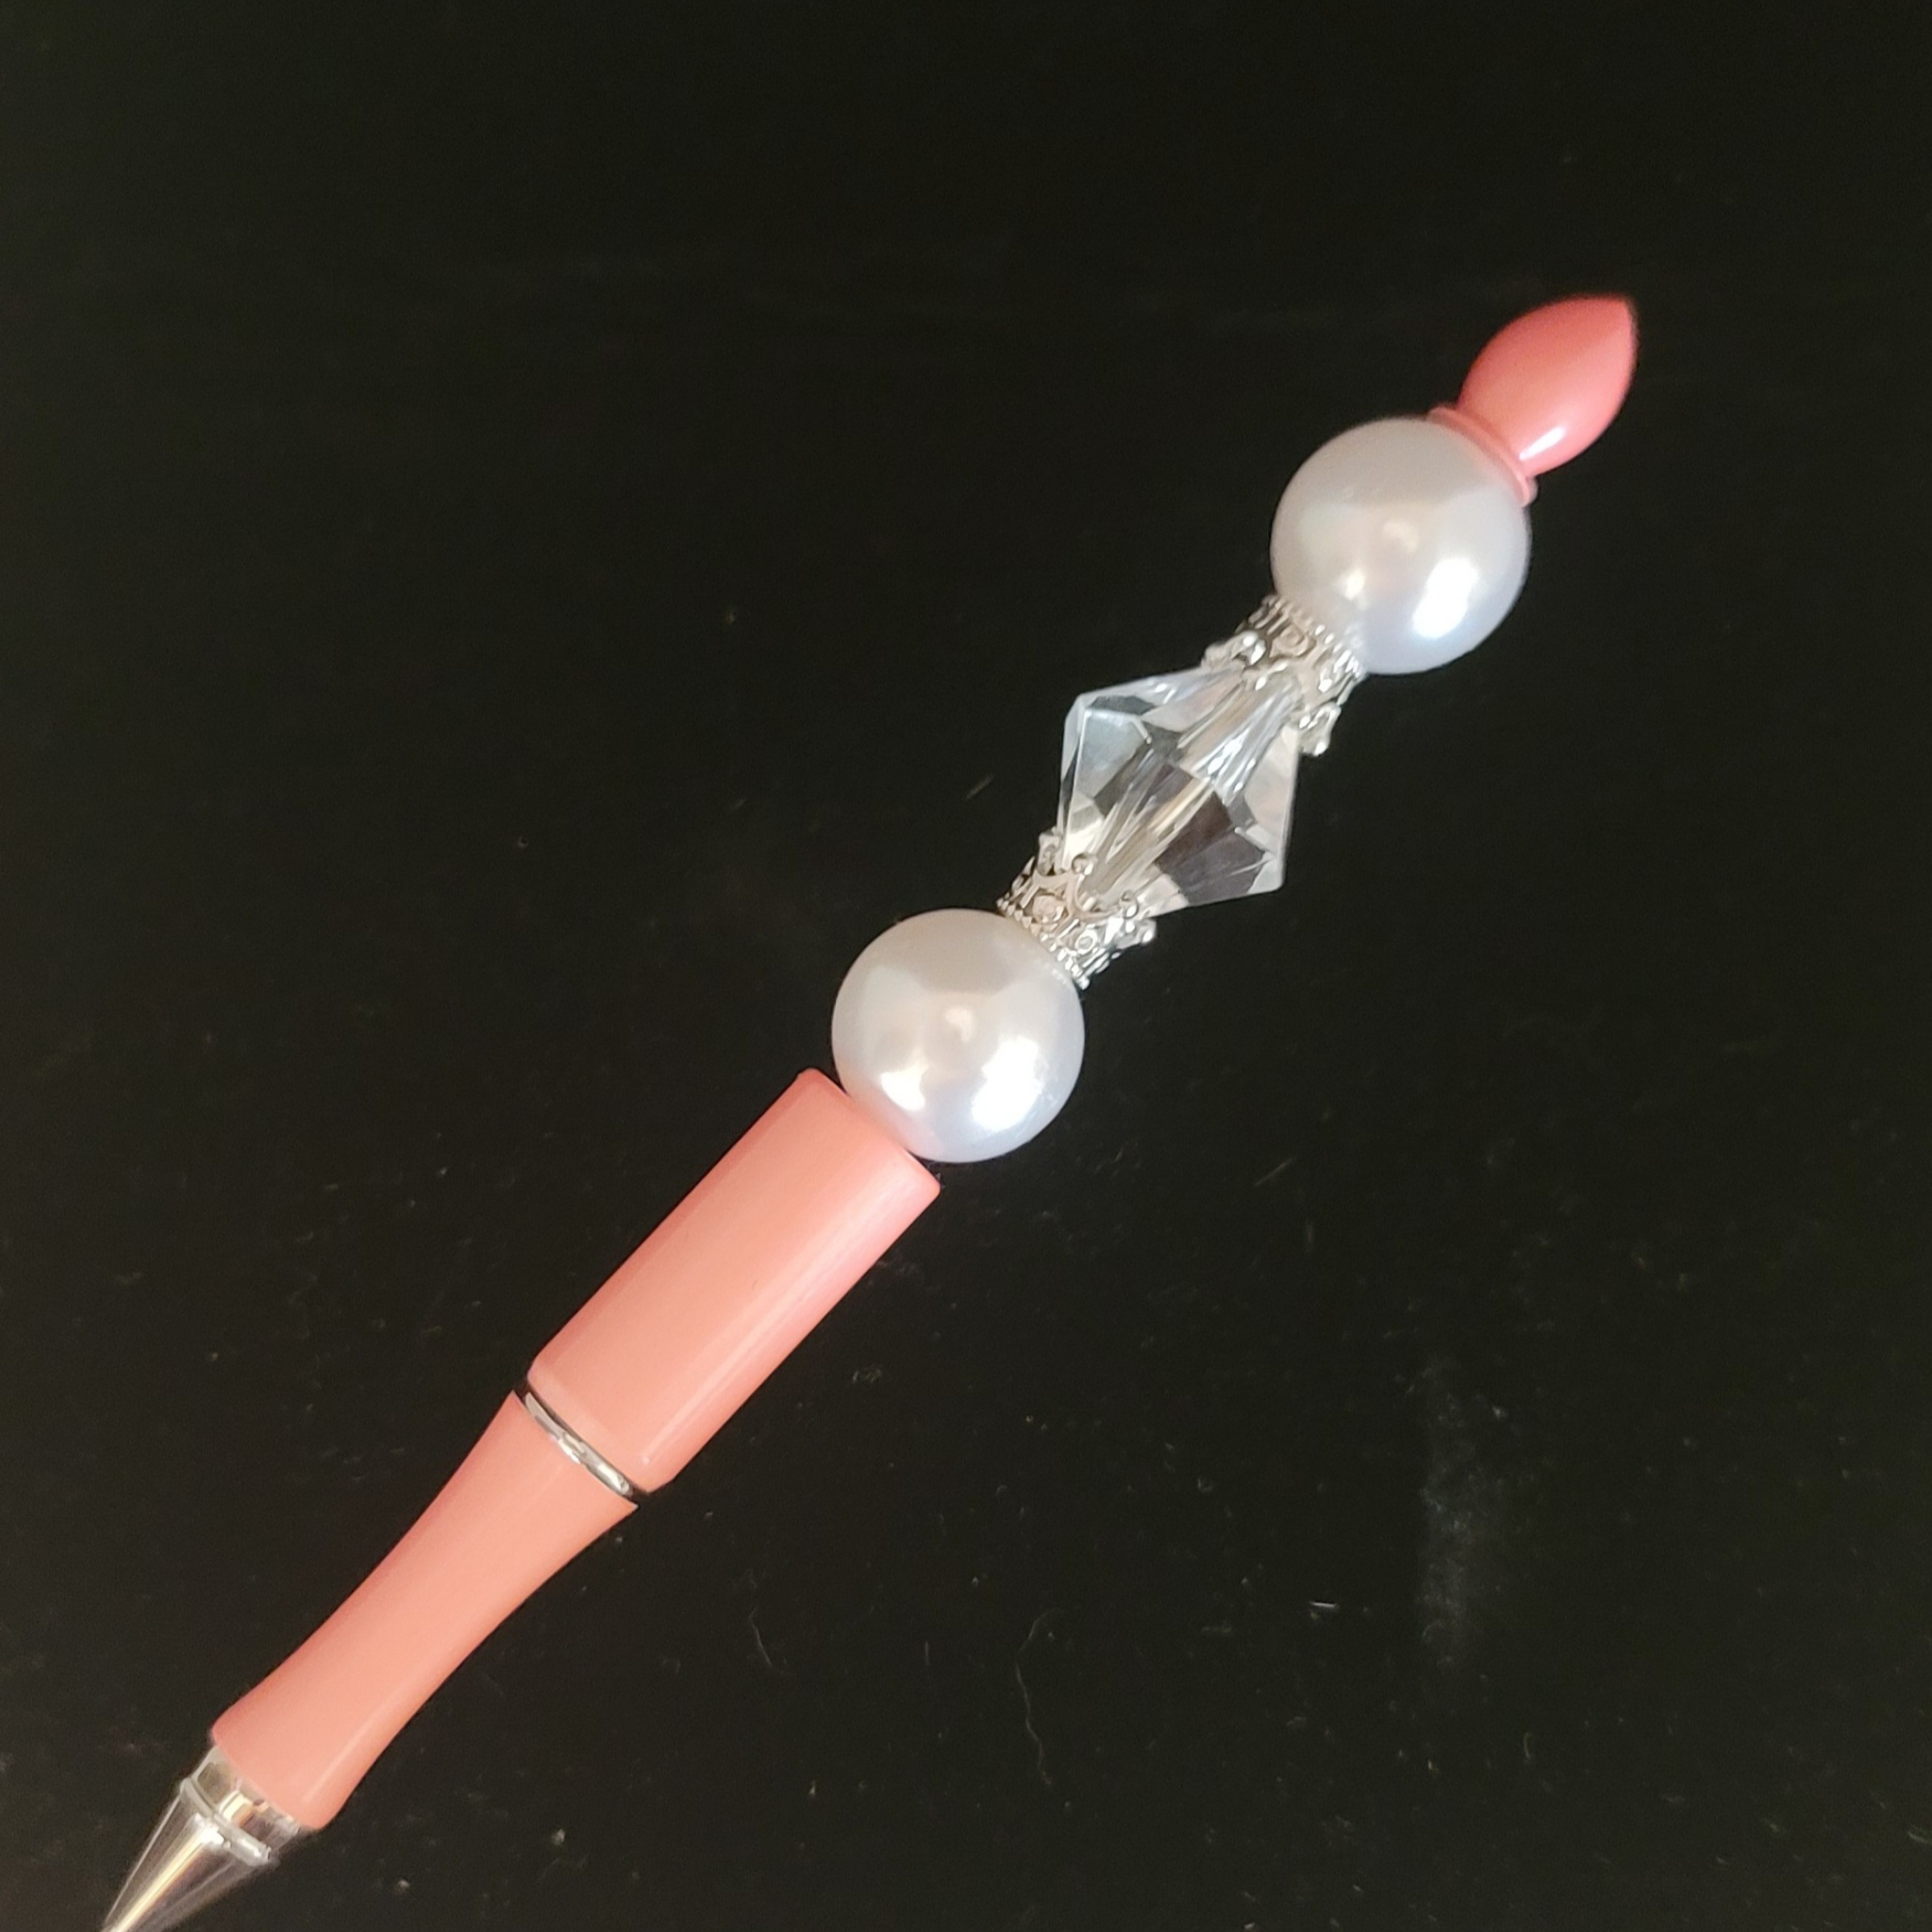 Sophia - Pearl, Crystal & Pastel Pink Jeweled Ink Pen